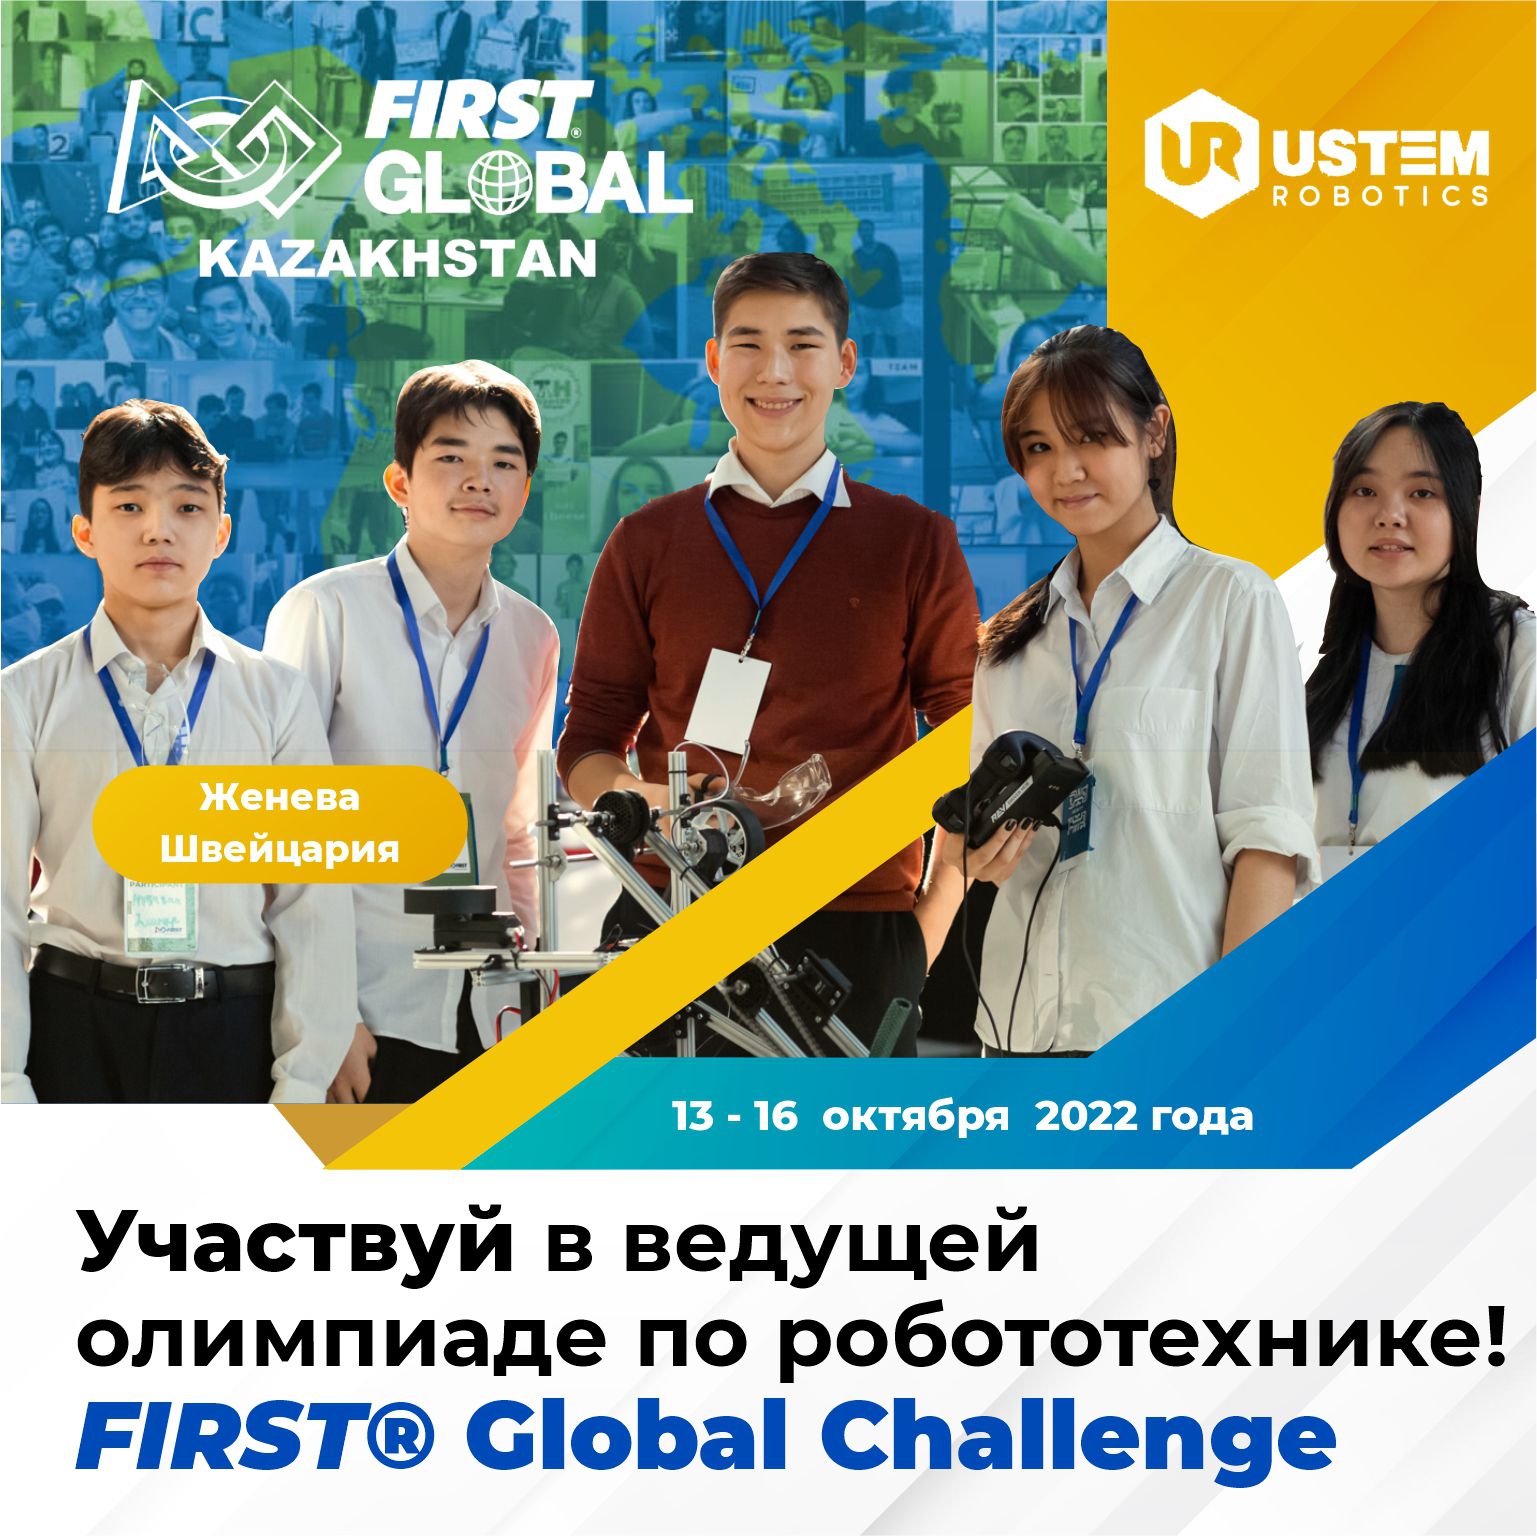 Юных робототехников приглашают принять участие в олимпиаде FIRST Global Challenge